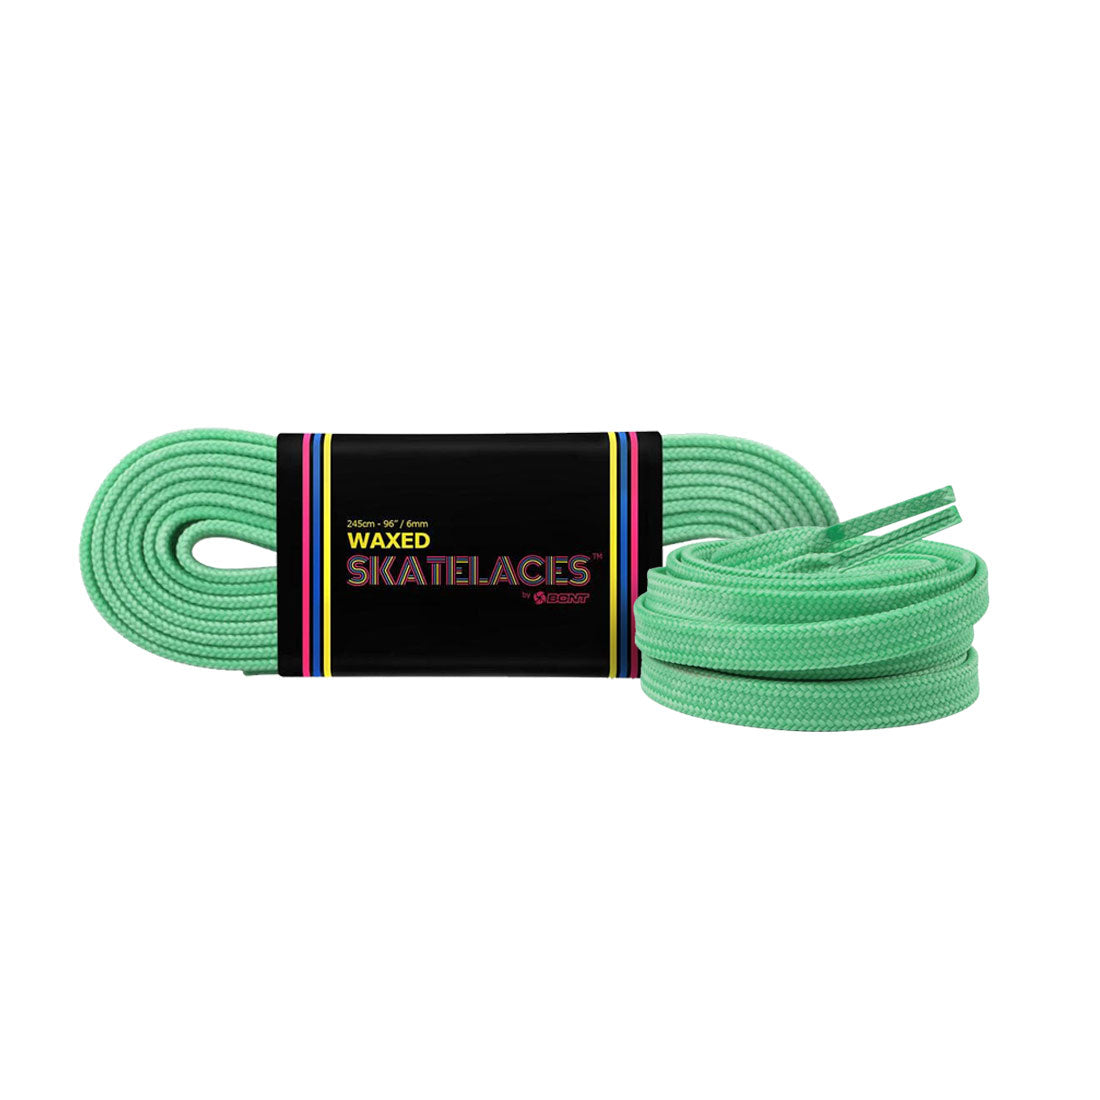 Bont Waxed 8mm Laces - 200cm/79in Pistachio Green Laces